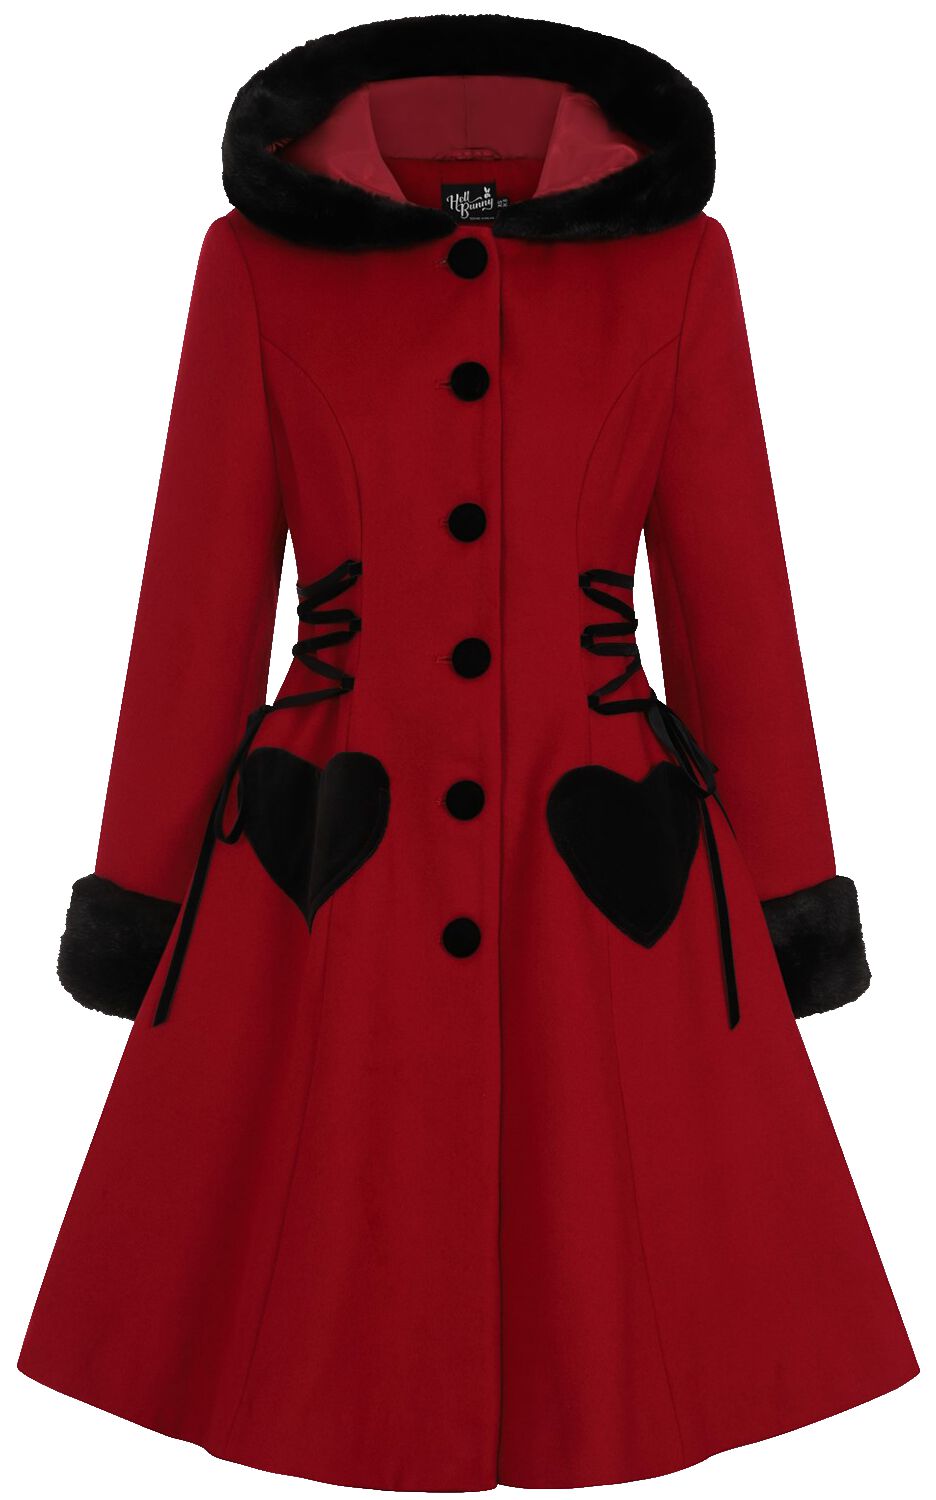 Manteaux Gothic de Hell Bunny - Manteau Scarlett - XS à 4XL - pour Femme - rouge/noir